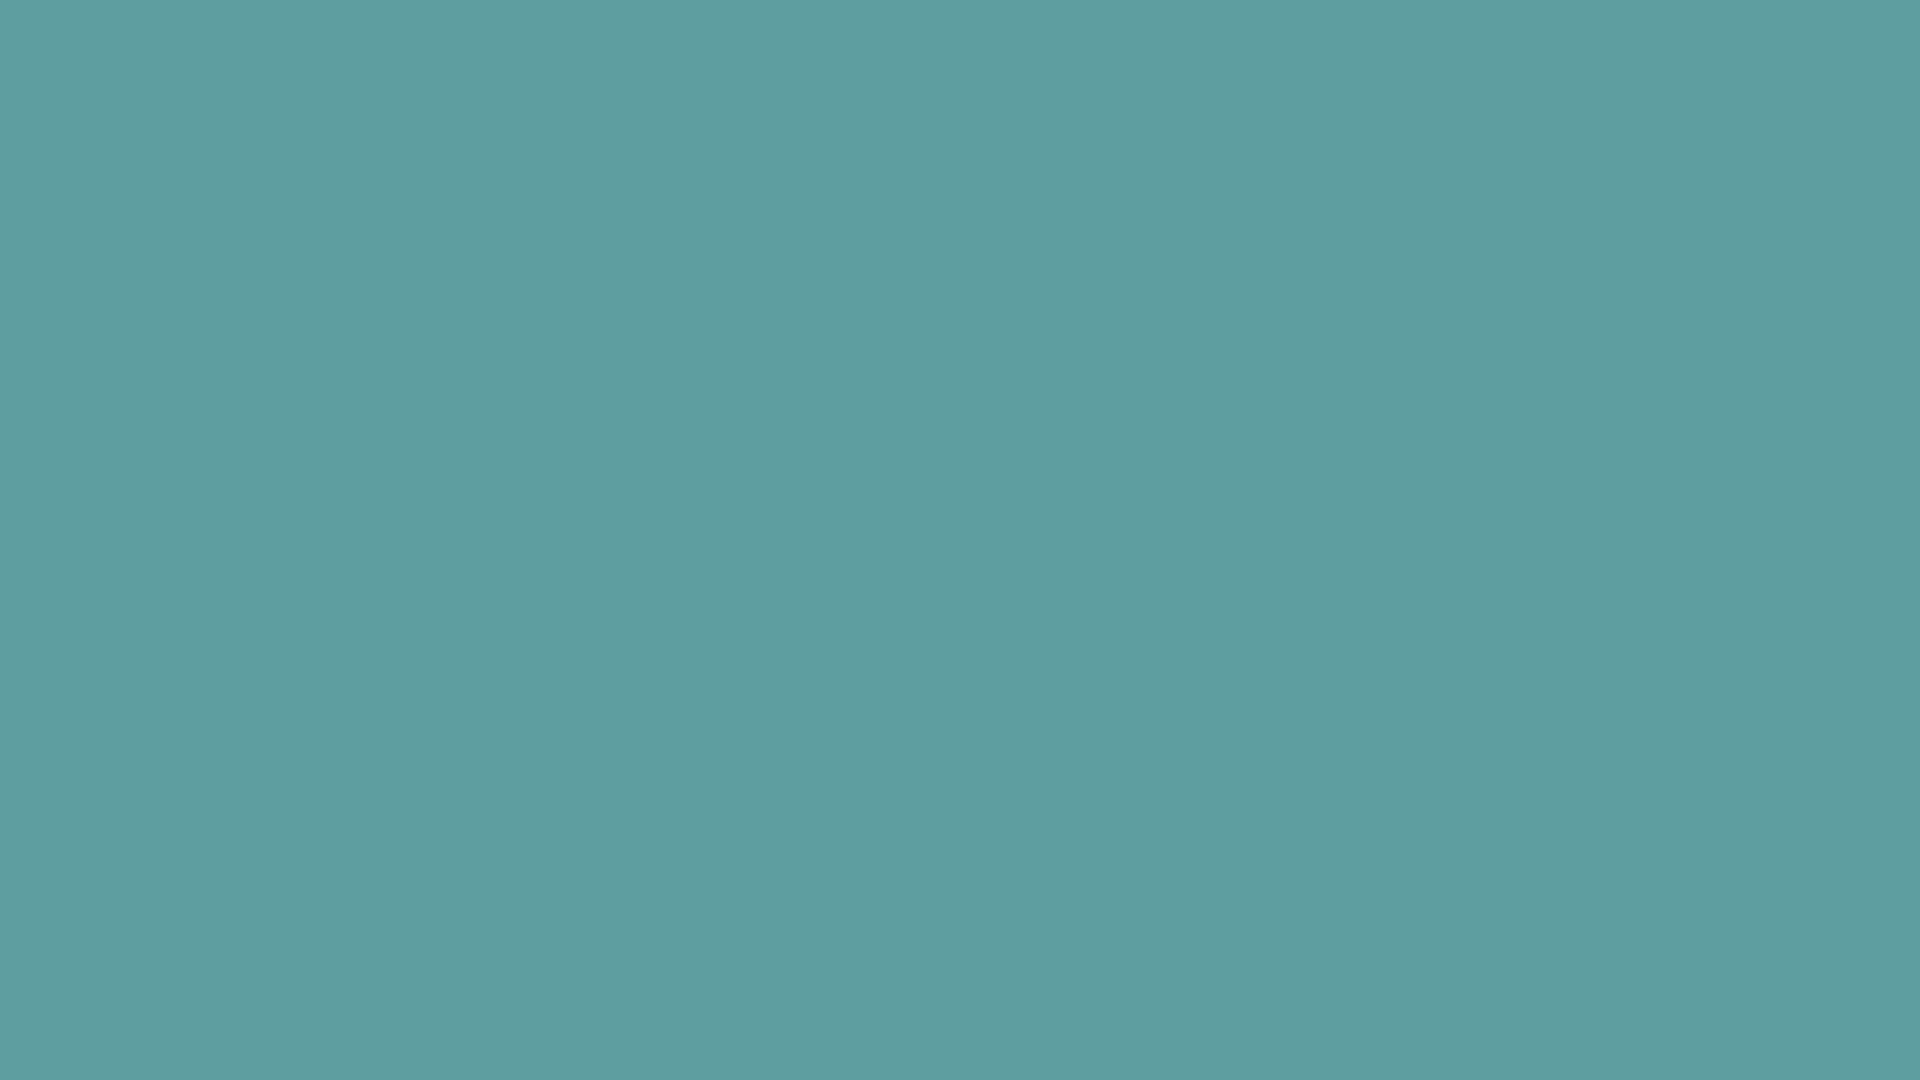 1920x1080 Cadet Blue Solid Color Background